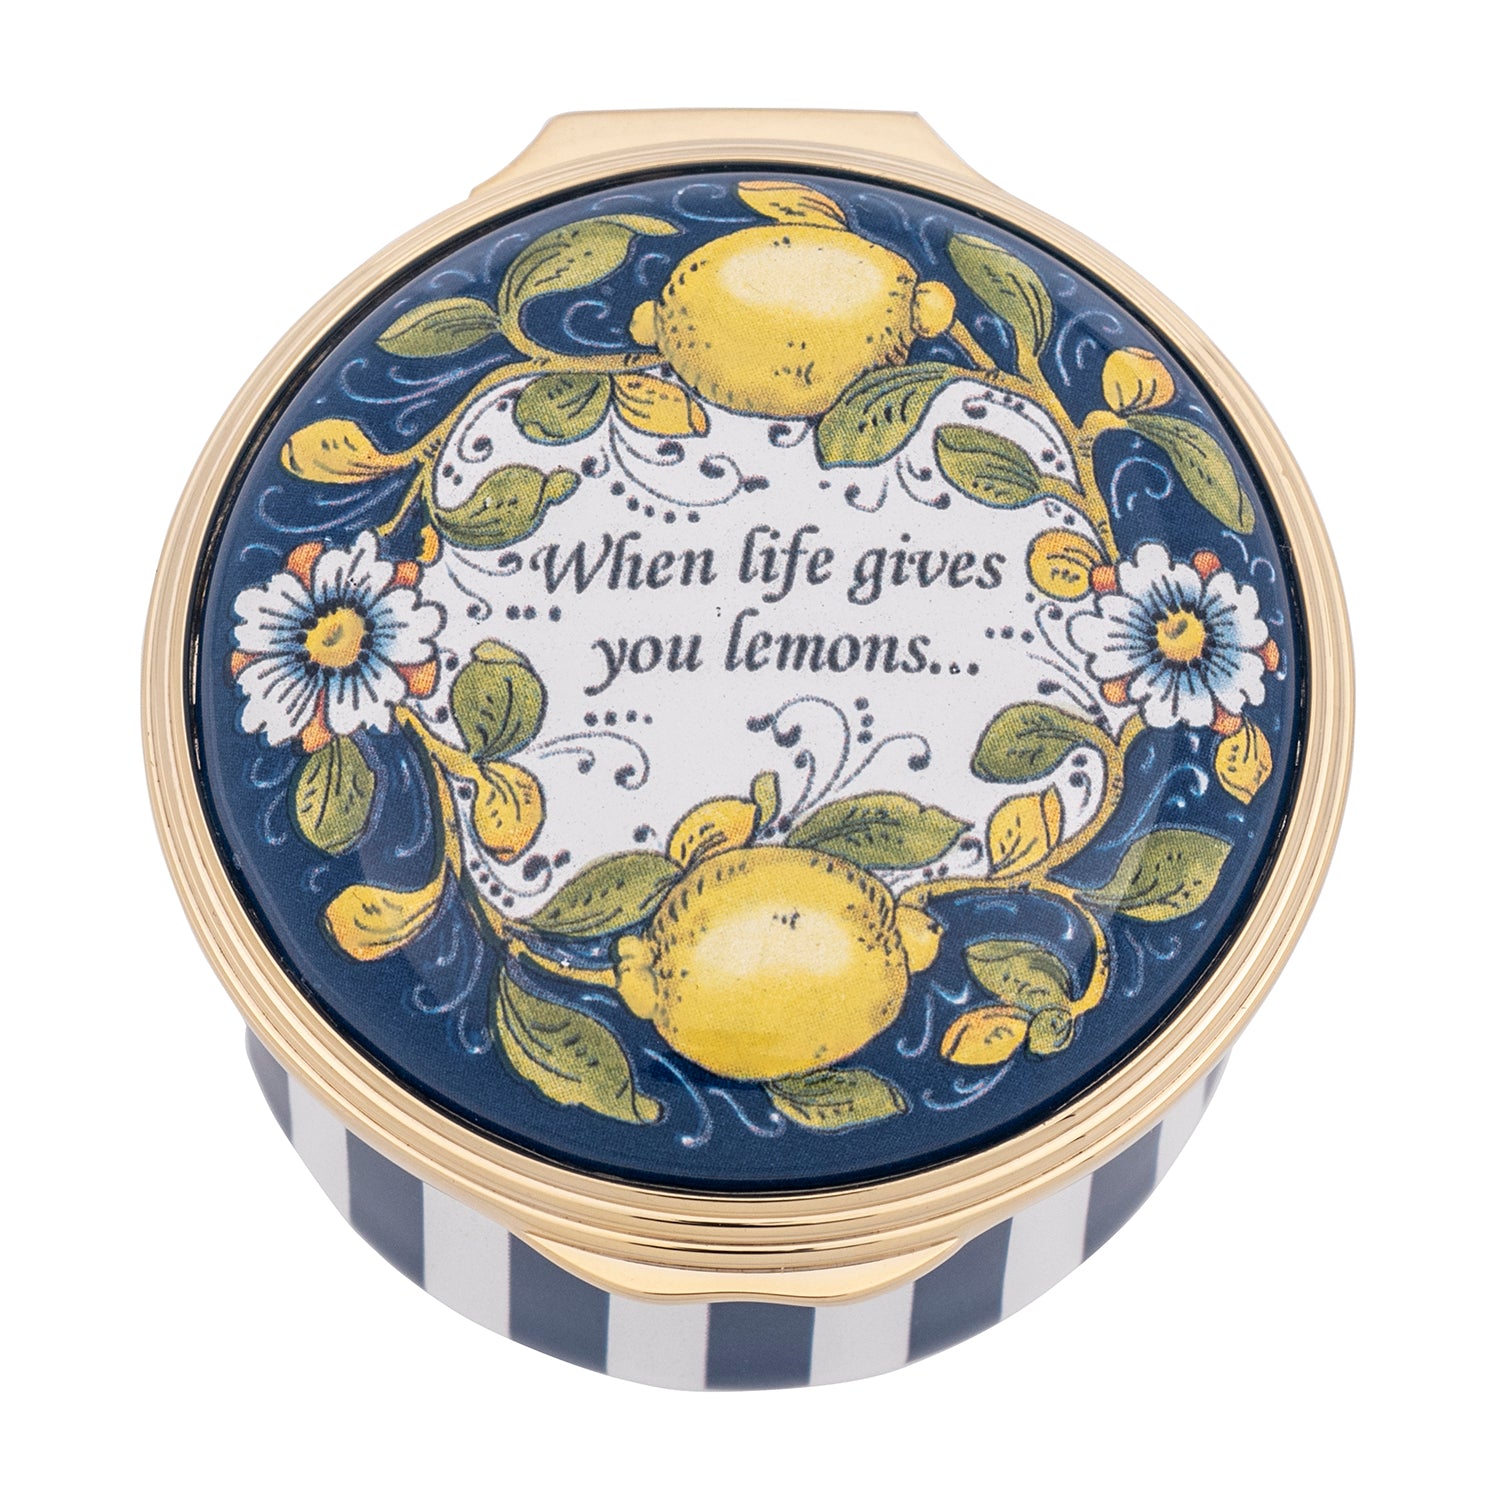 "When Life Gives you Lemons" Enamel Box